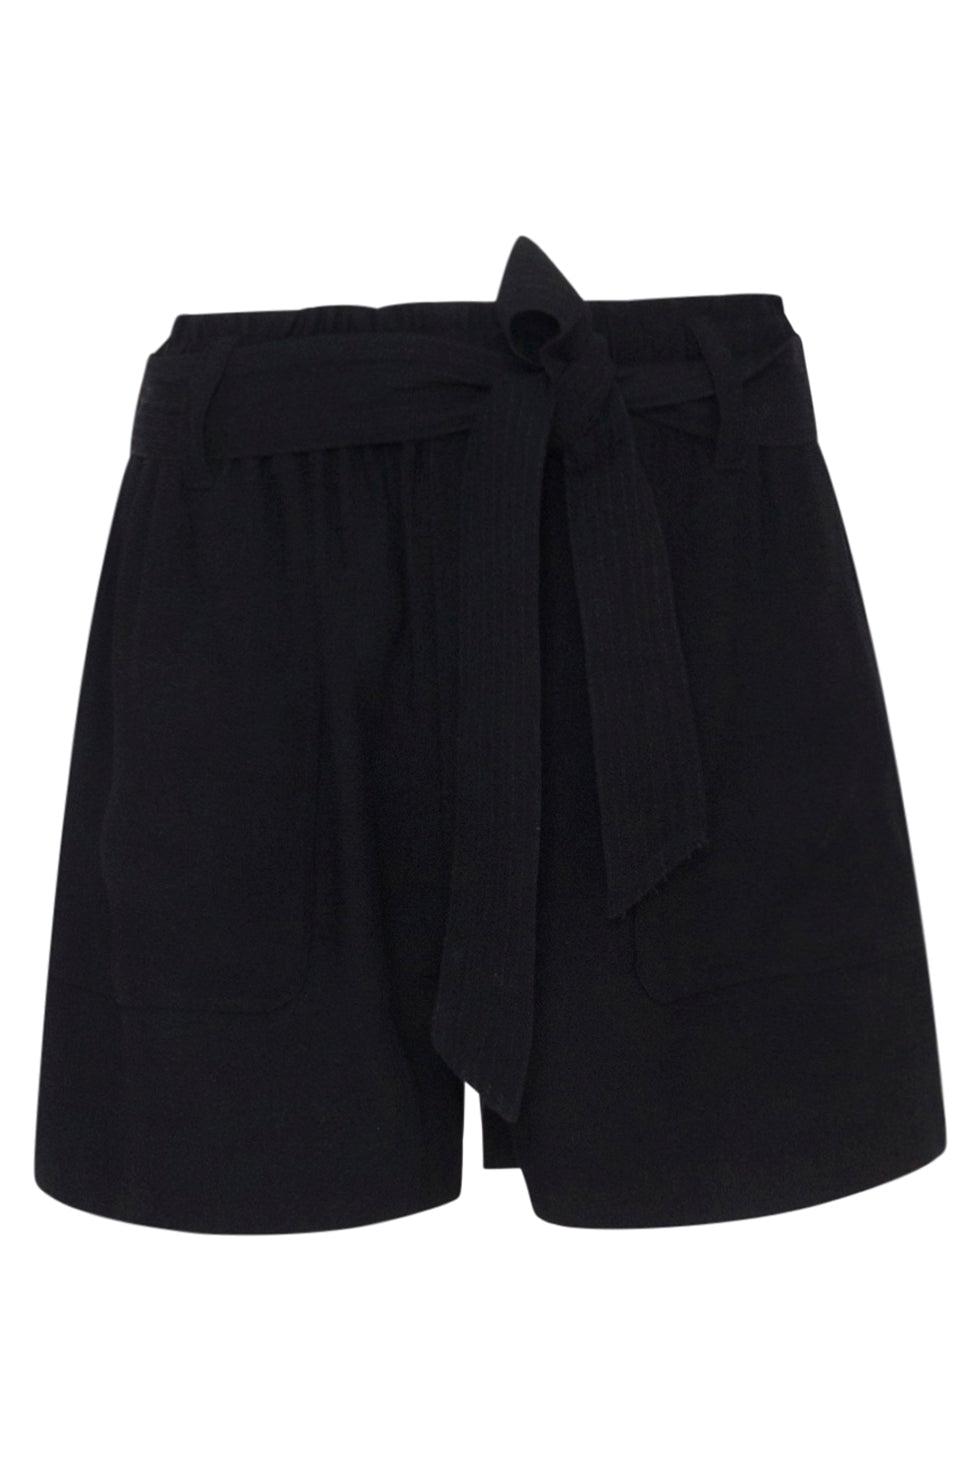 23083-999 Stijlvolle Zwarte Casual Shorts Voor Een Comfortabele Zomerlook